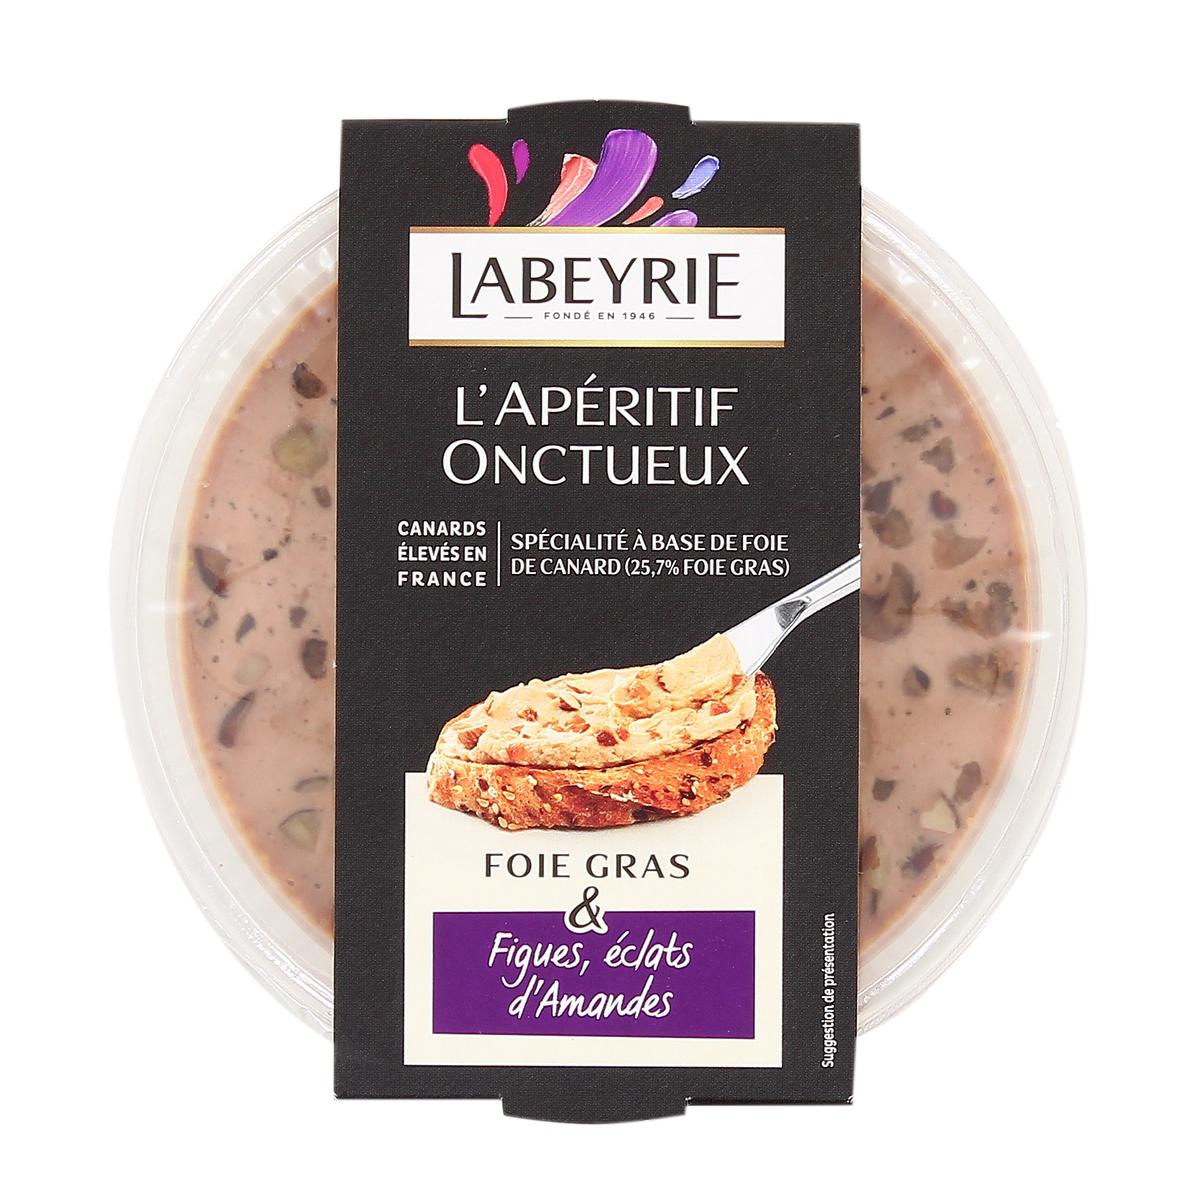 Achat Labeyrie L'Apéritif Onctueux foie gras & figues, éclats d'amandes